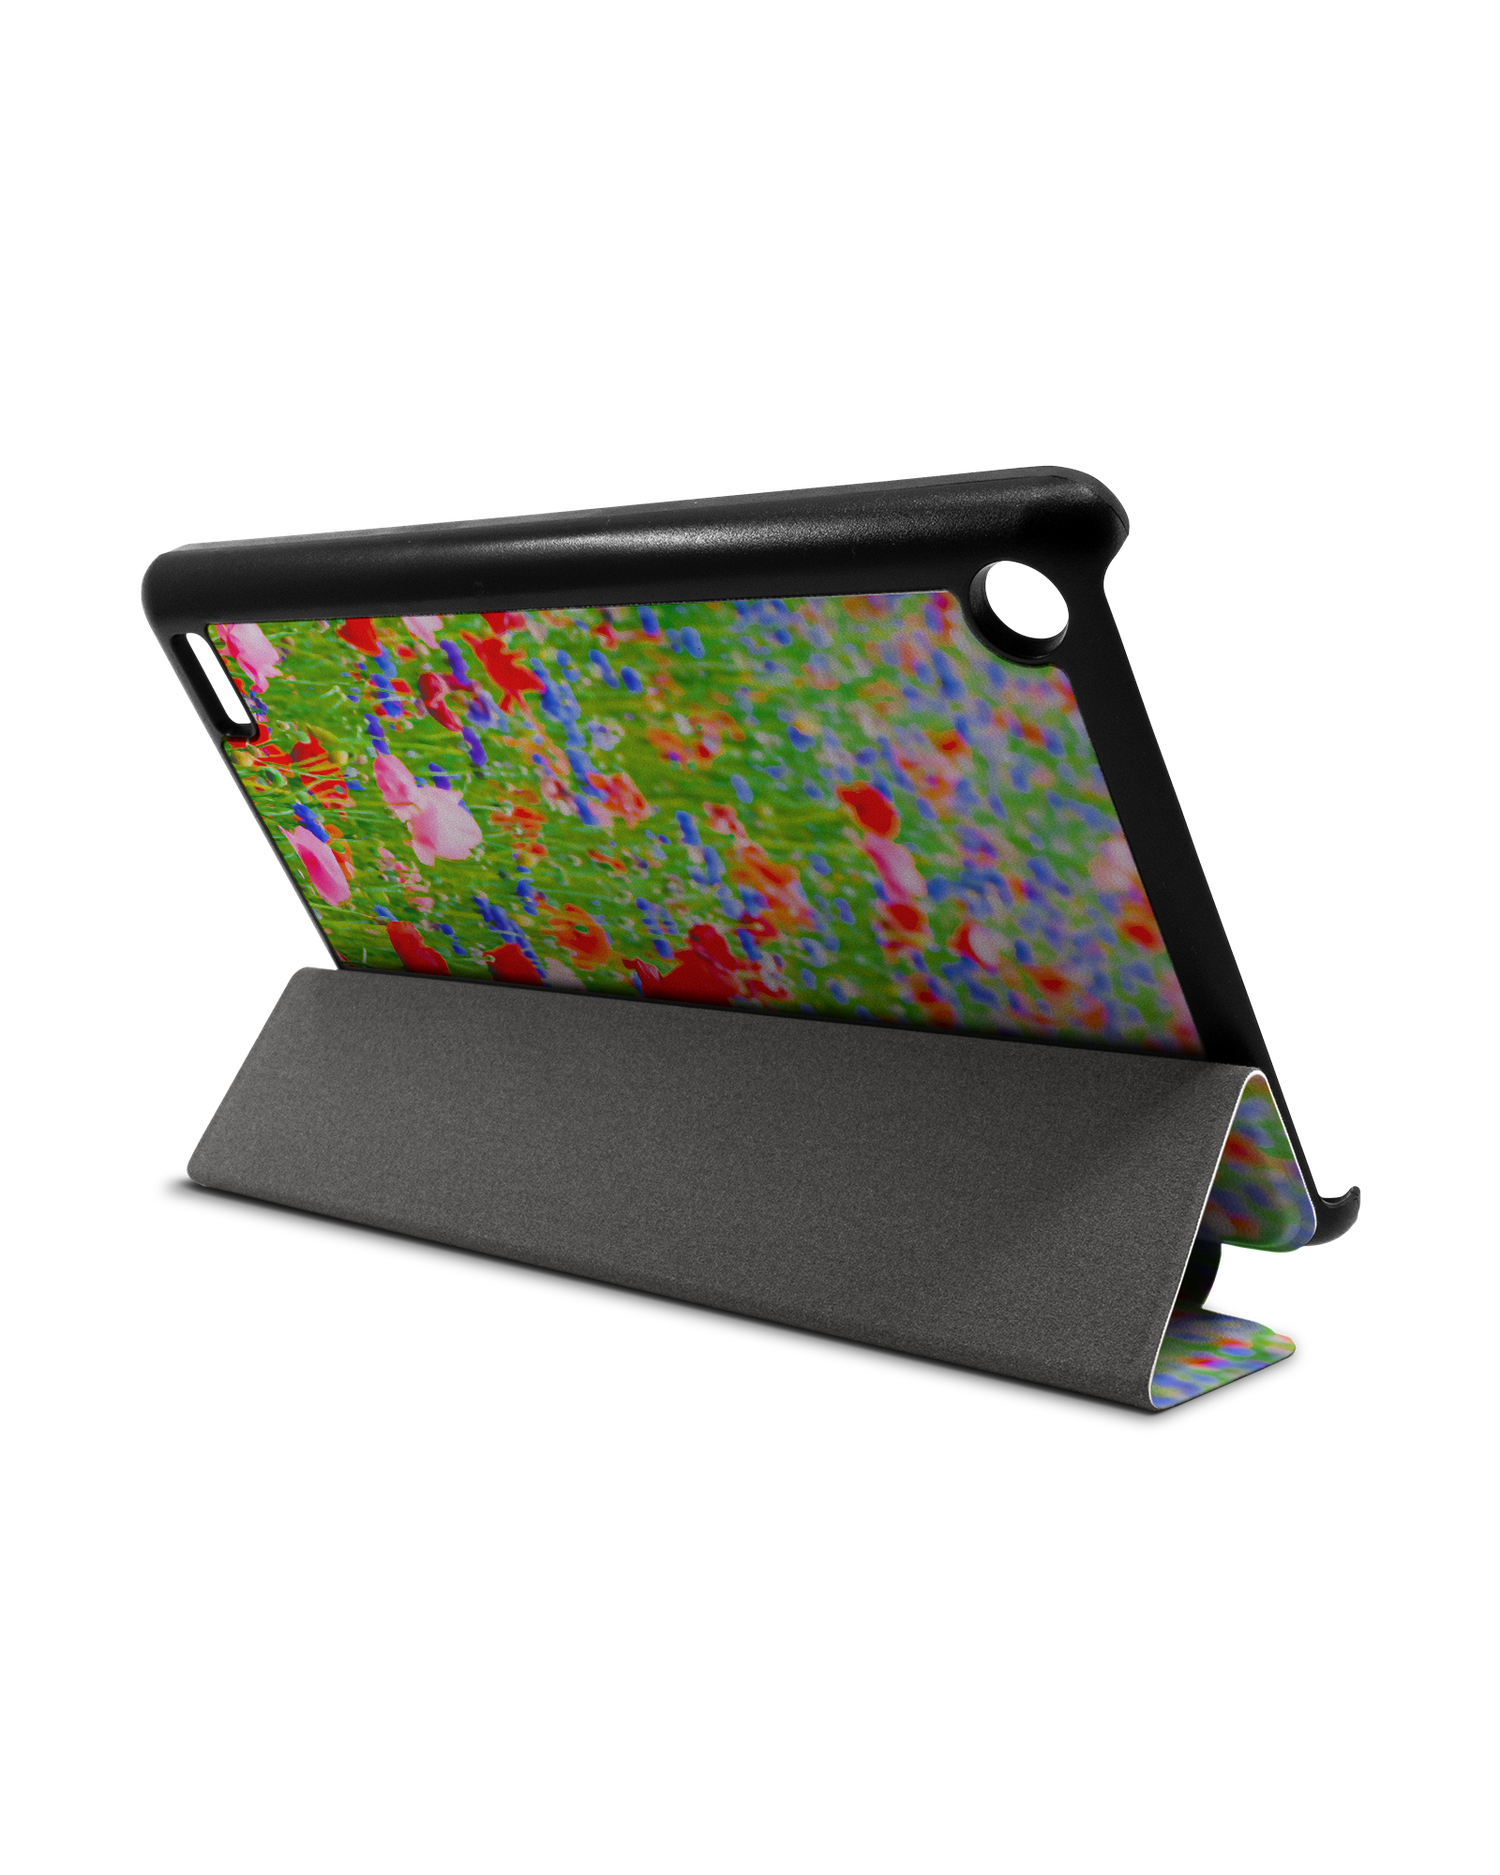 Flower Field Tablet Smart Case für Amazon Fire 7: Aufgestellt im Querformat